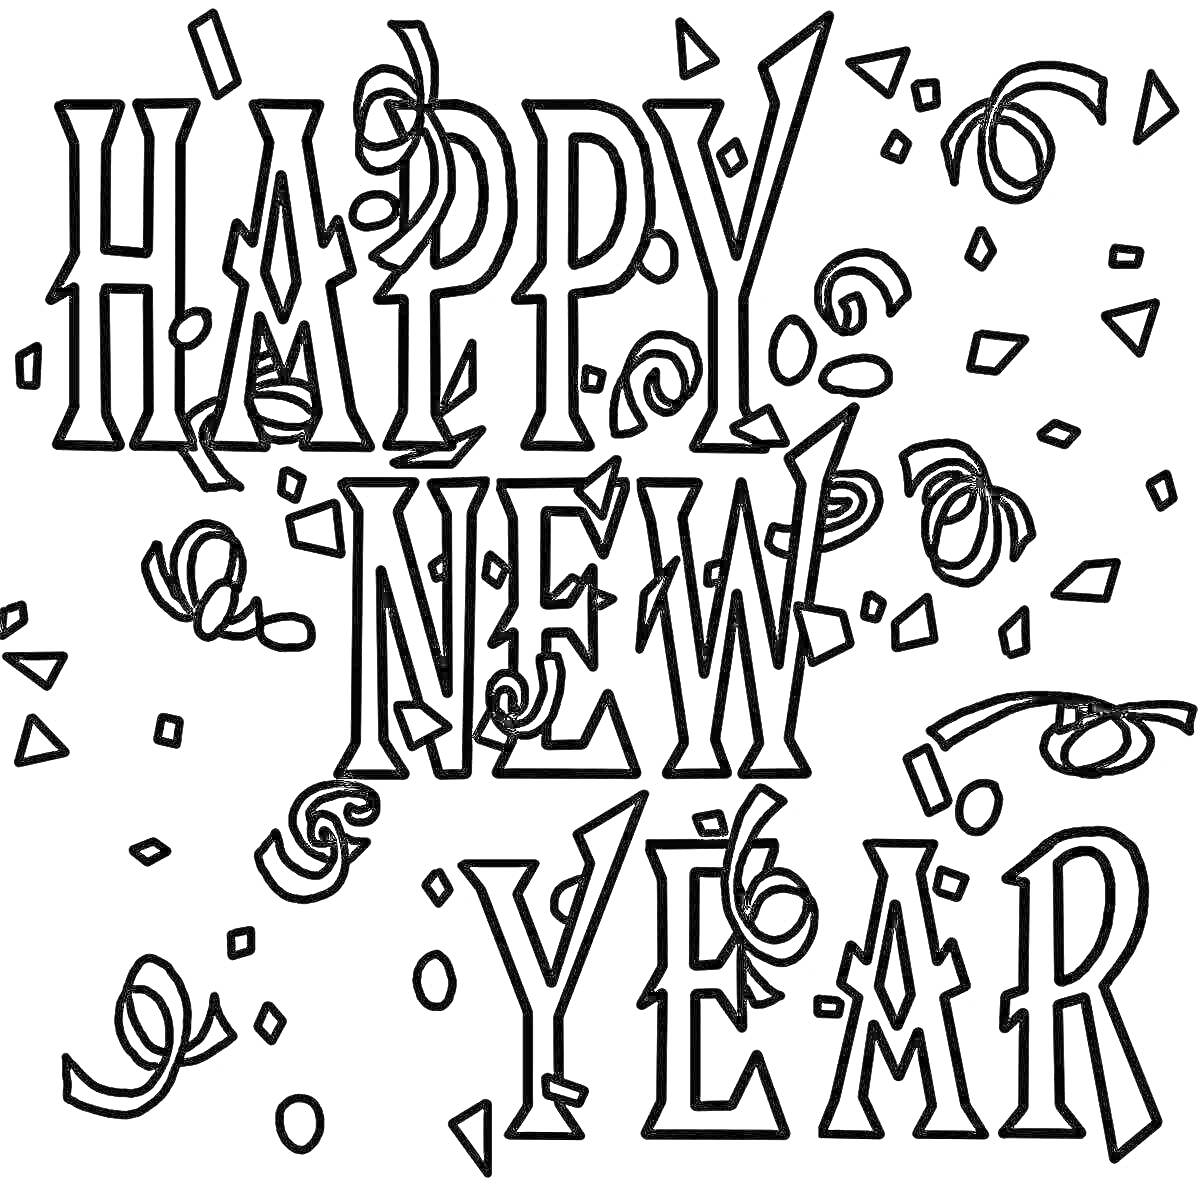 Раскраска Happy New Year надпись с конфетти и серпантином